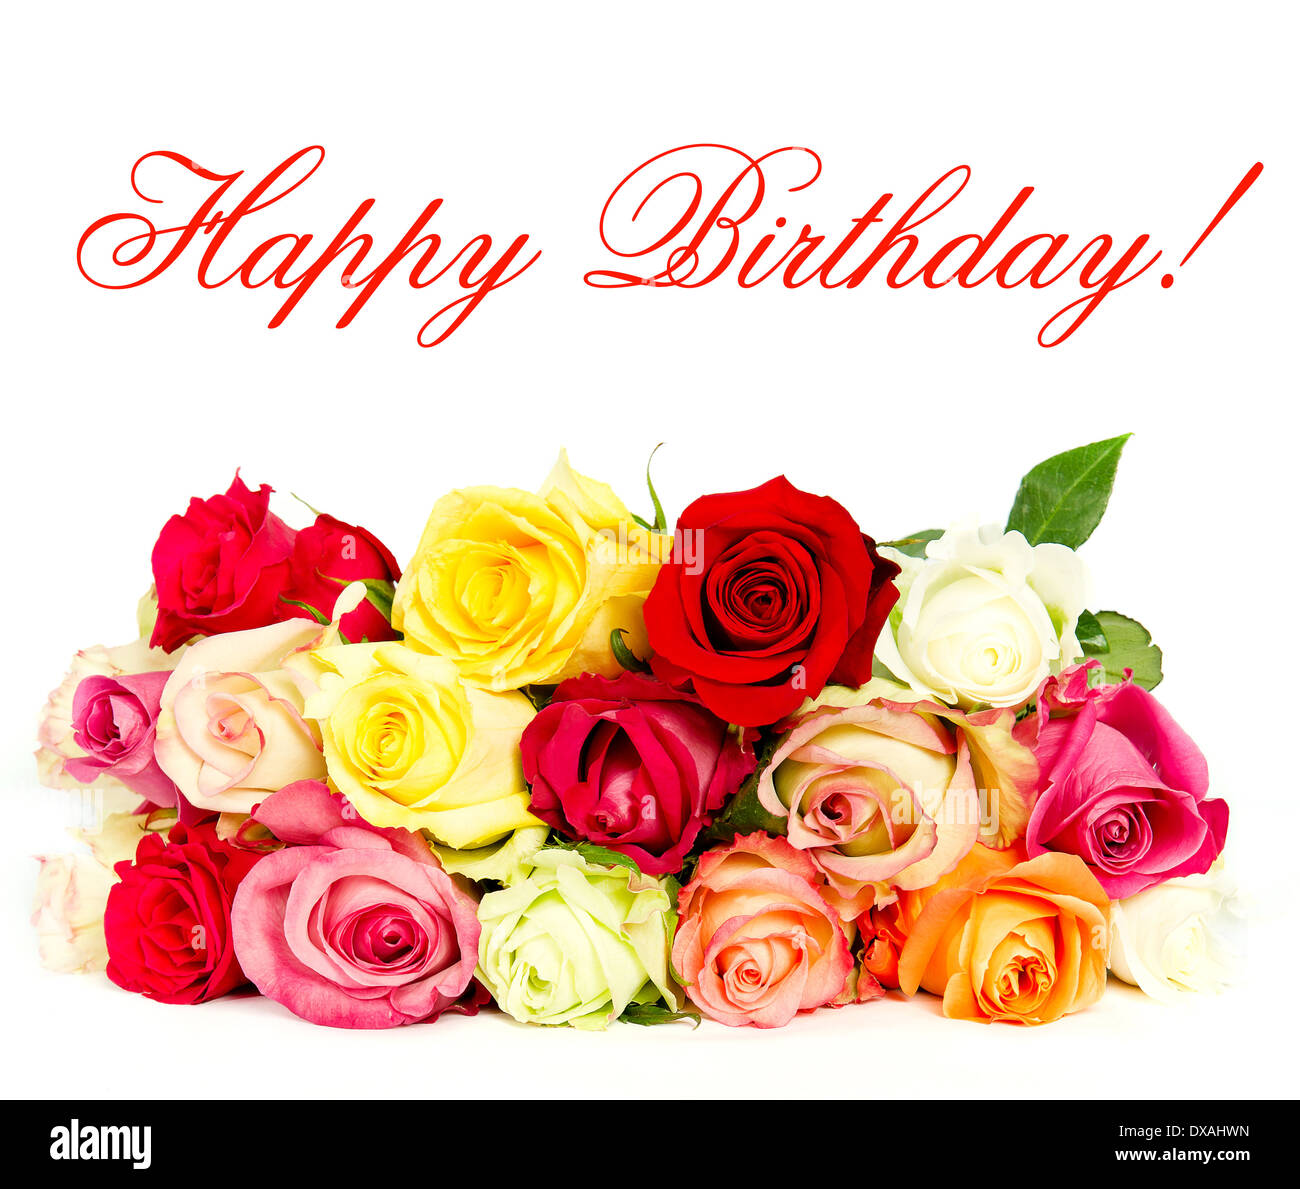 Herzlichen Glückwunsch zum Geburtstag! Bunte Rosen, schönen Blumenstrauß. Karte-Konzept Stockfoto